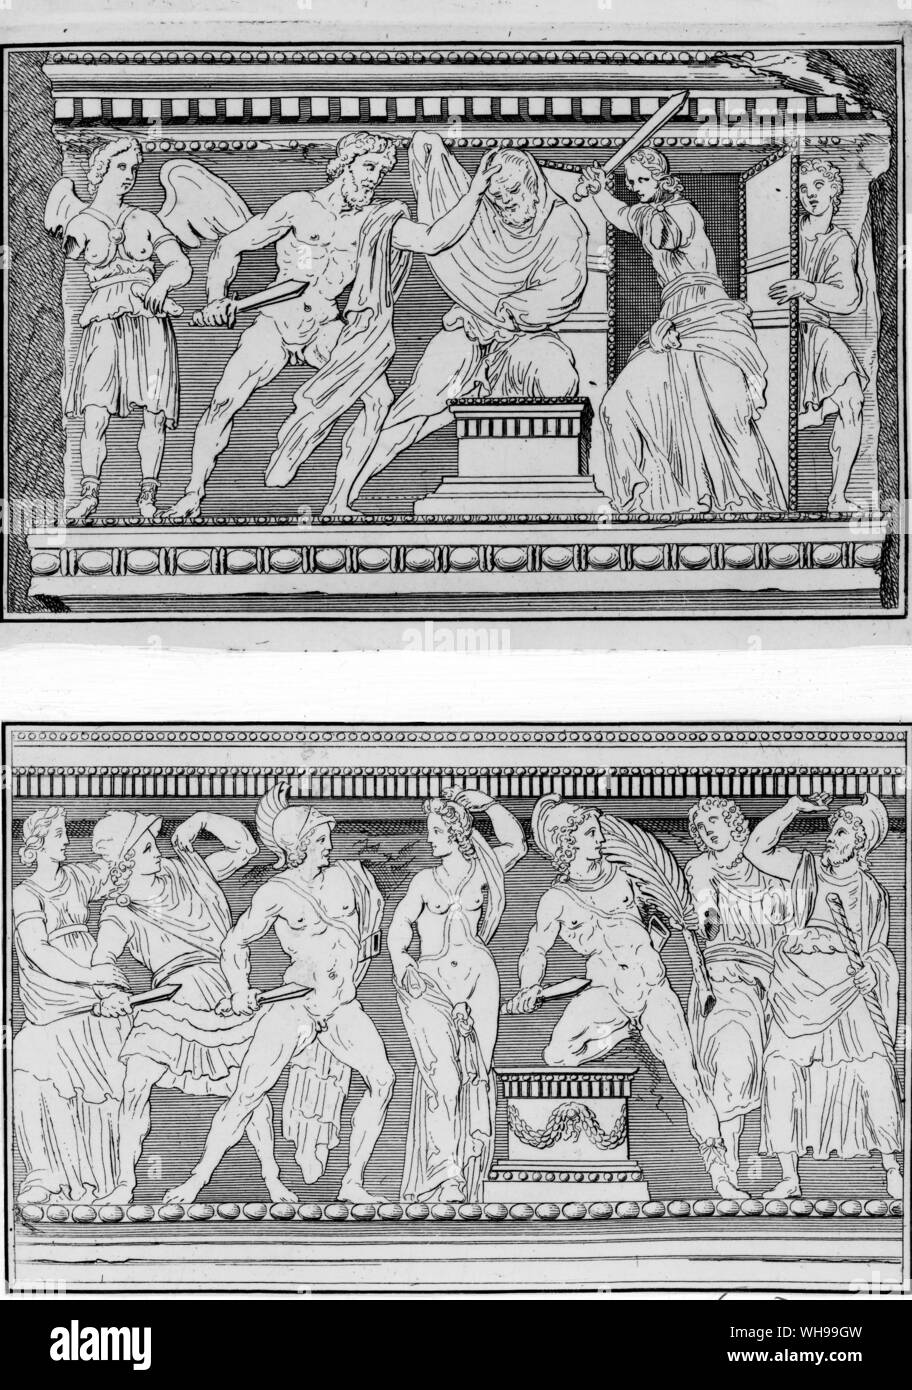 Illustration de l'Etruria de Dempster's montrant des épisodes de la mythologie grecque sculptée sur les côtés d'un sarcophage en marbre Banque D'Images